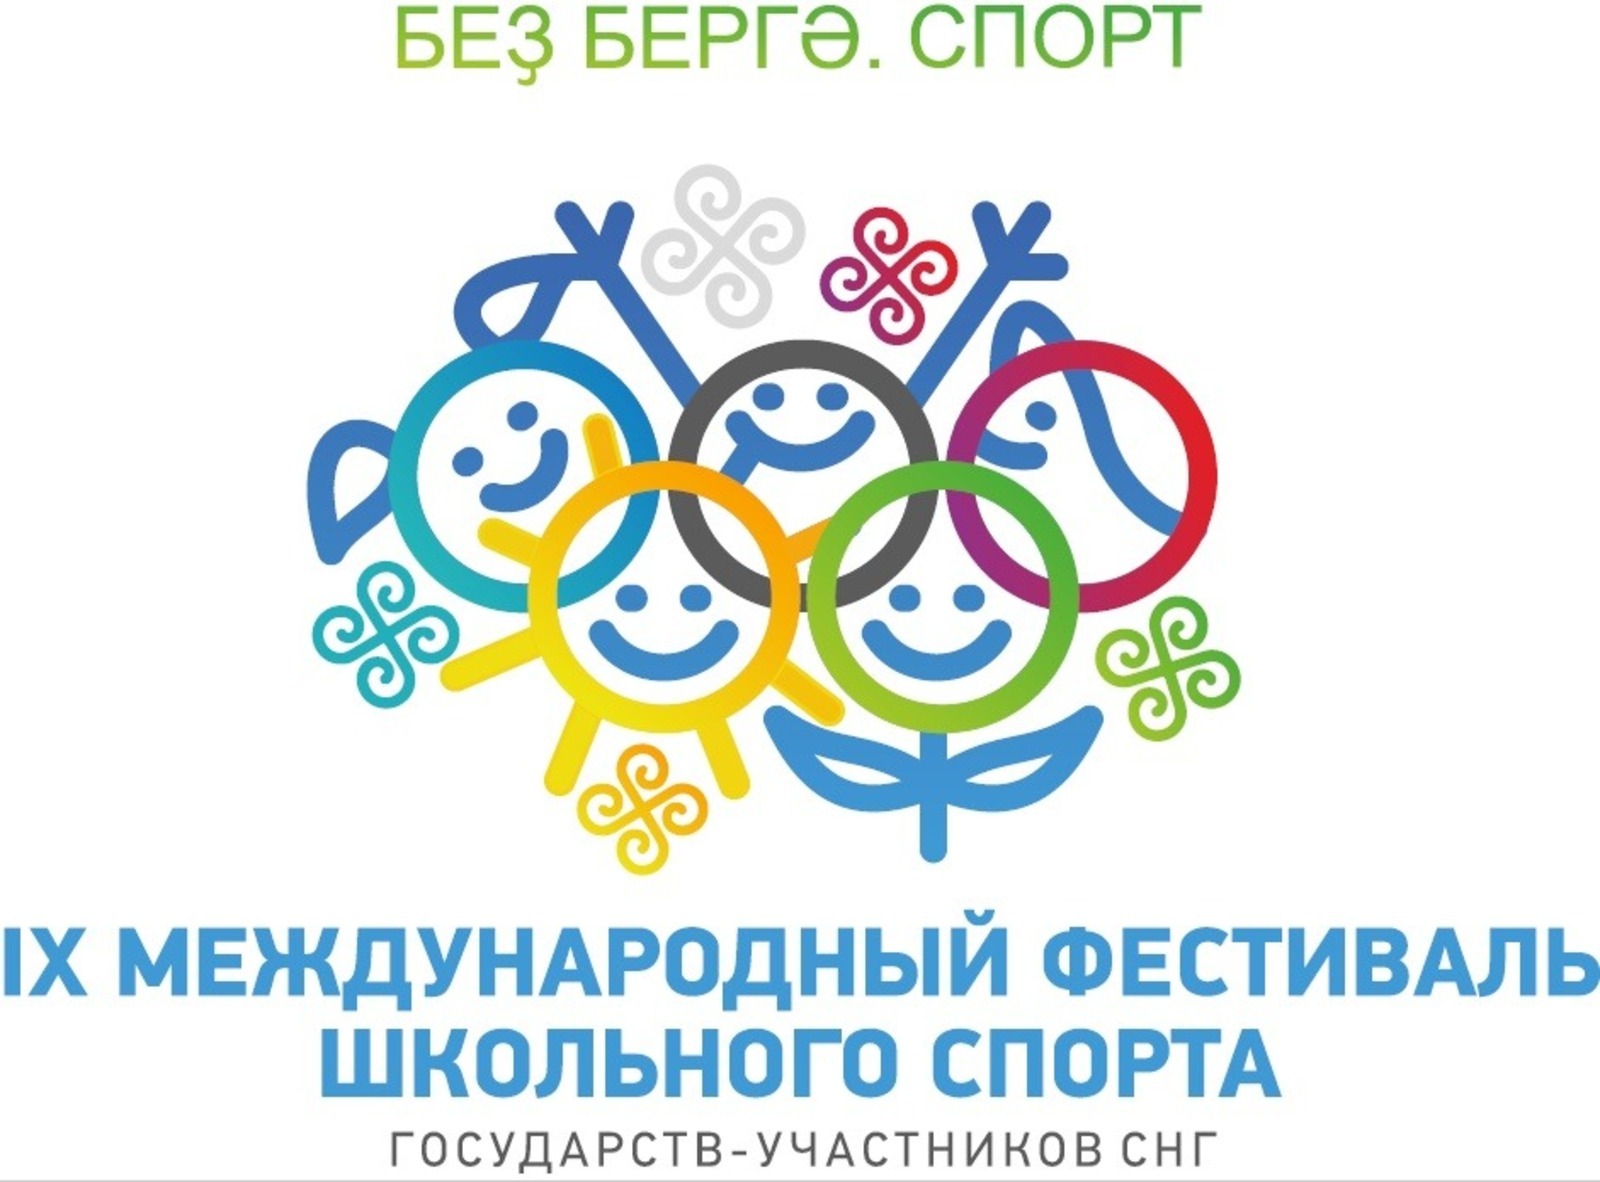 Уфа примет IX международный фестиваль школьного спорта с участием стран СНГ